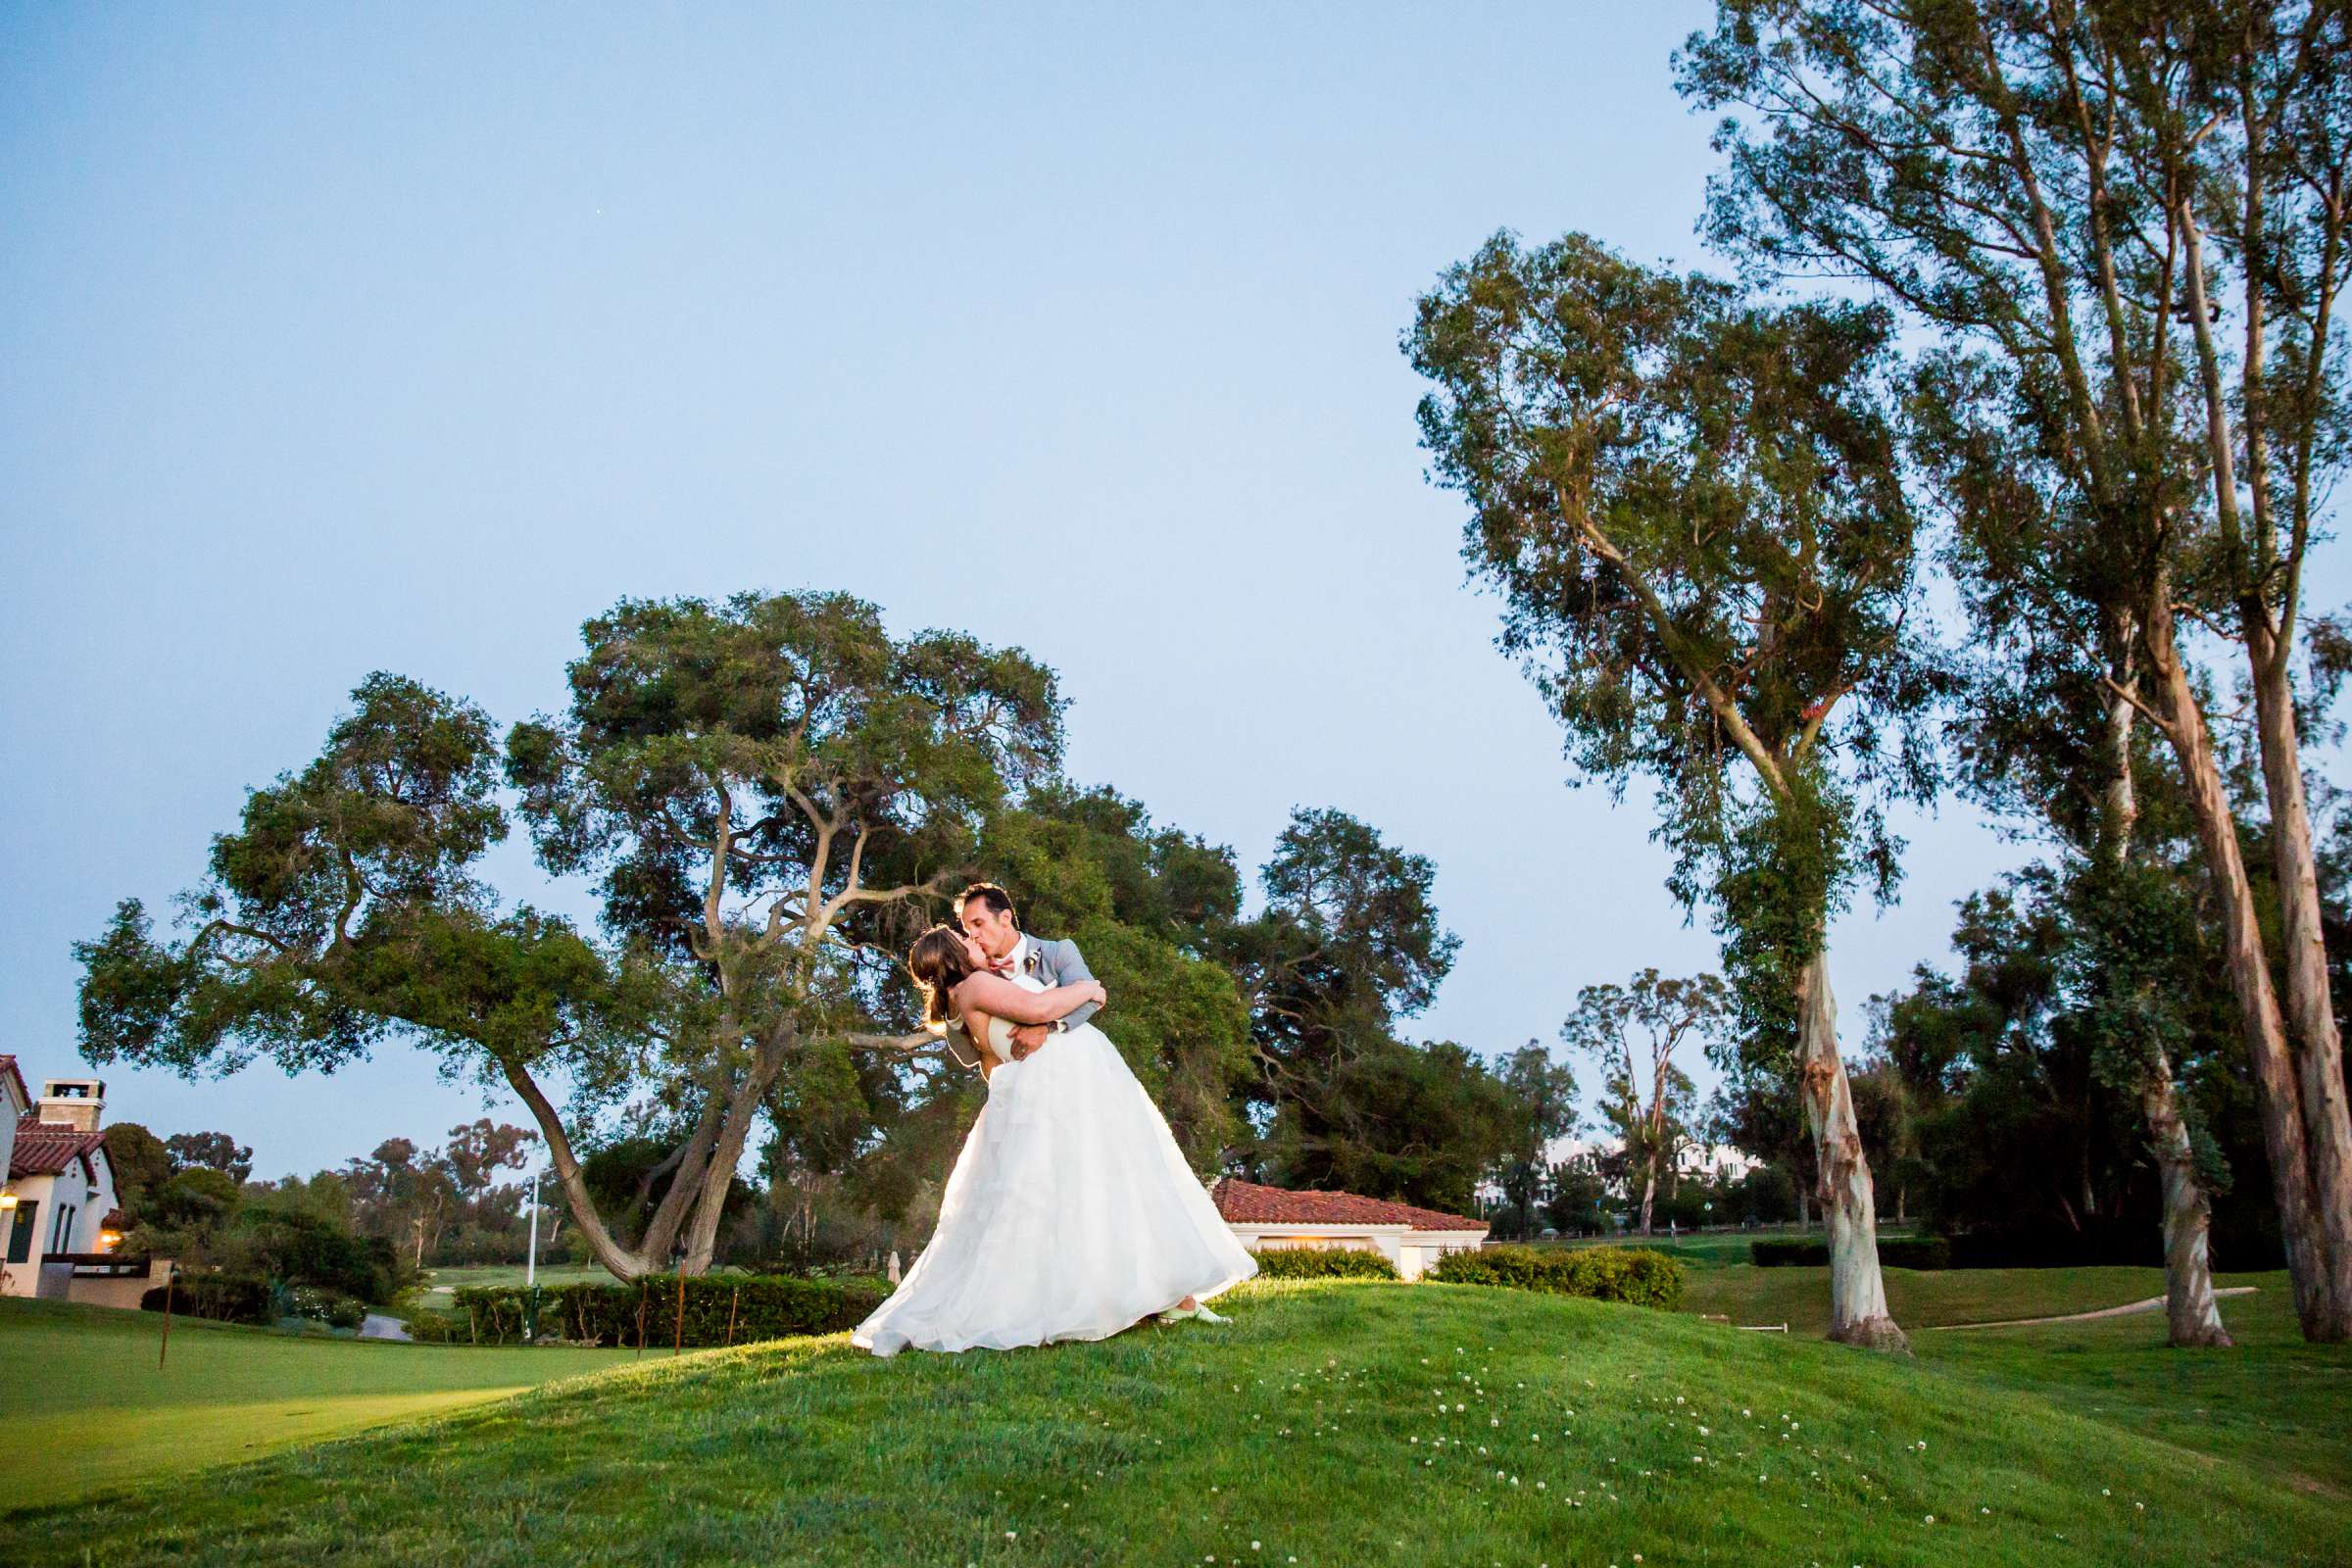 Rancho Santa Fe Golf Club Wedding coordinated by Monarch Weddings, Carolynn and Jon Wedding Photo #32 by True Photography